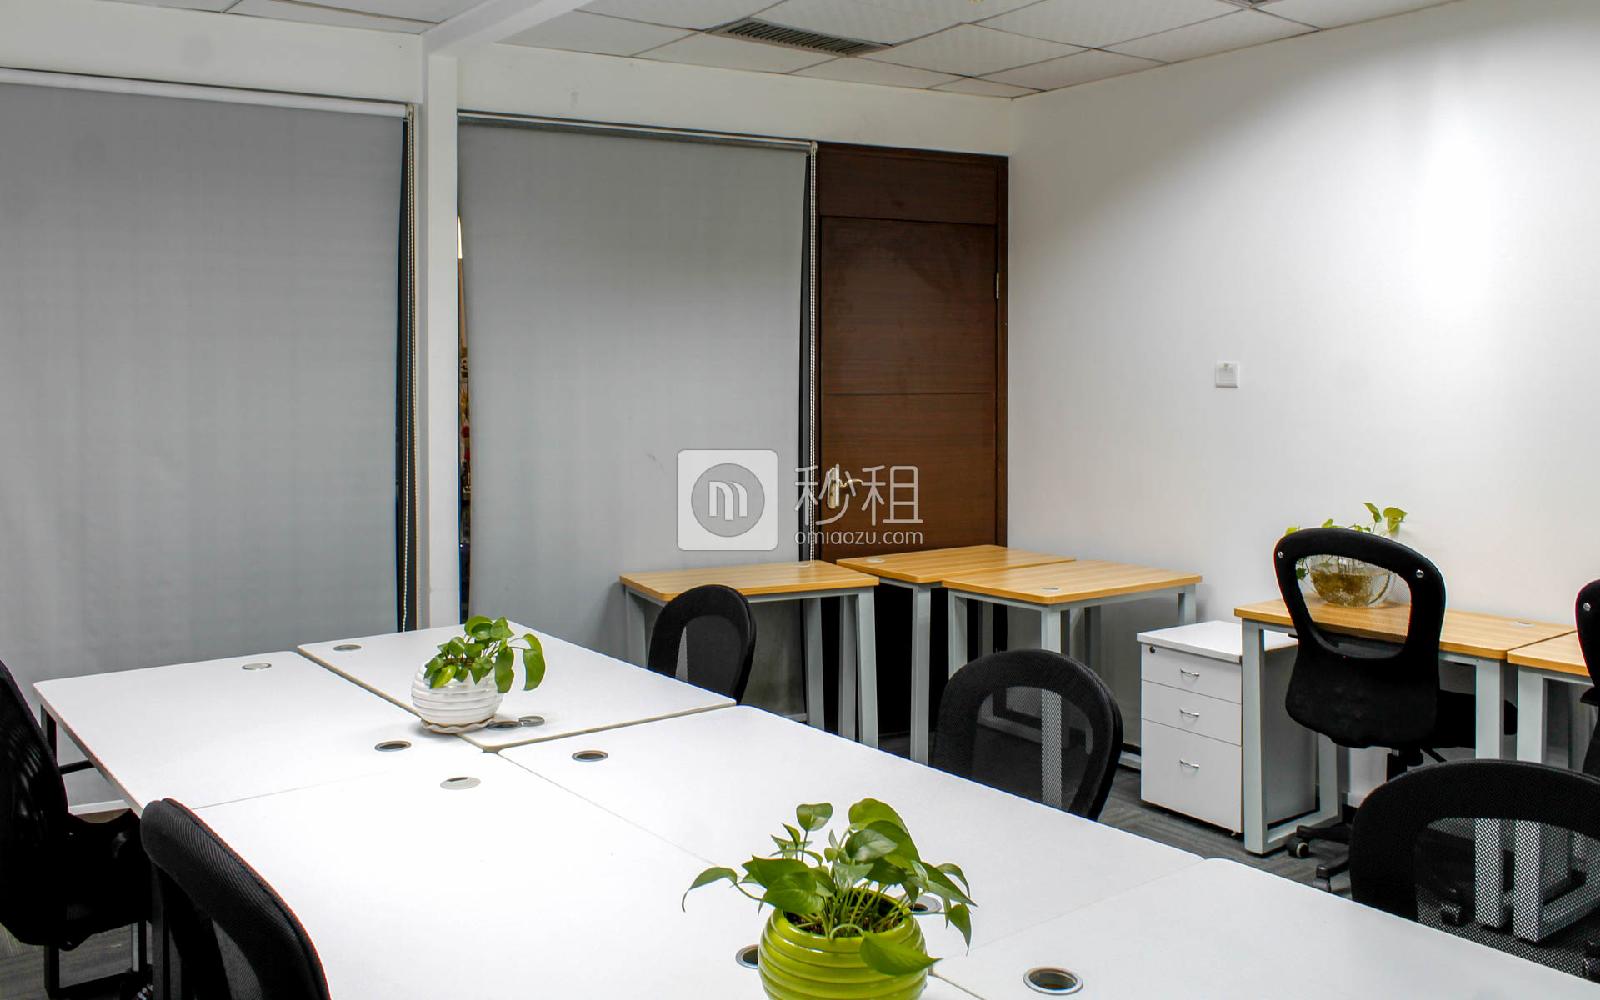 科技工业园大厦-捷时行众创空间写字楼出租45平米精装办公室9800元/间.月